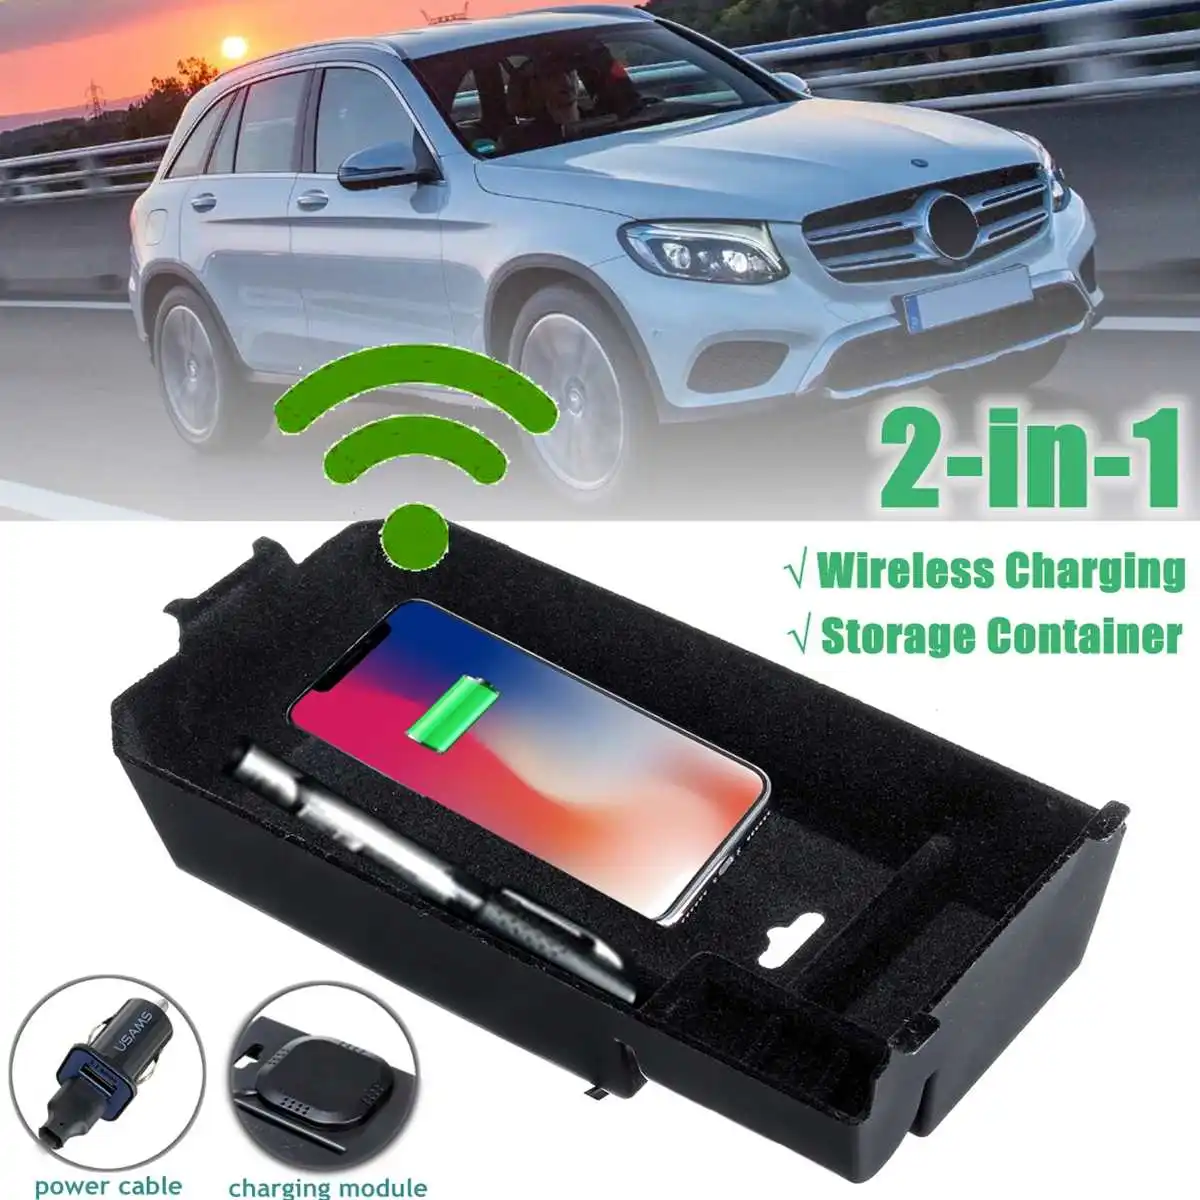 Телефон беспроводной зарядки центральный подлокотник коробка для хранения для Mercedes Benz GLC/C класс LHD 12 В DC беспроводной зарядный инструмент